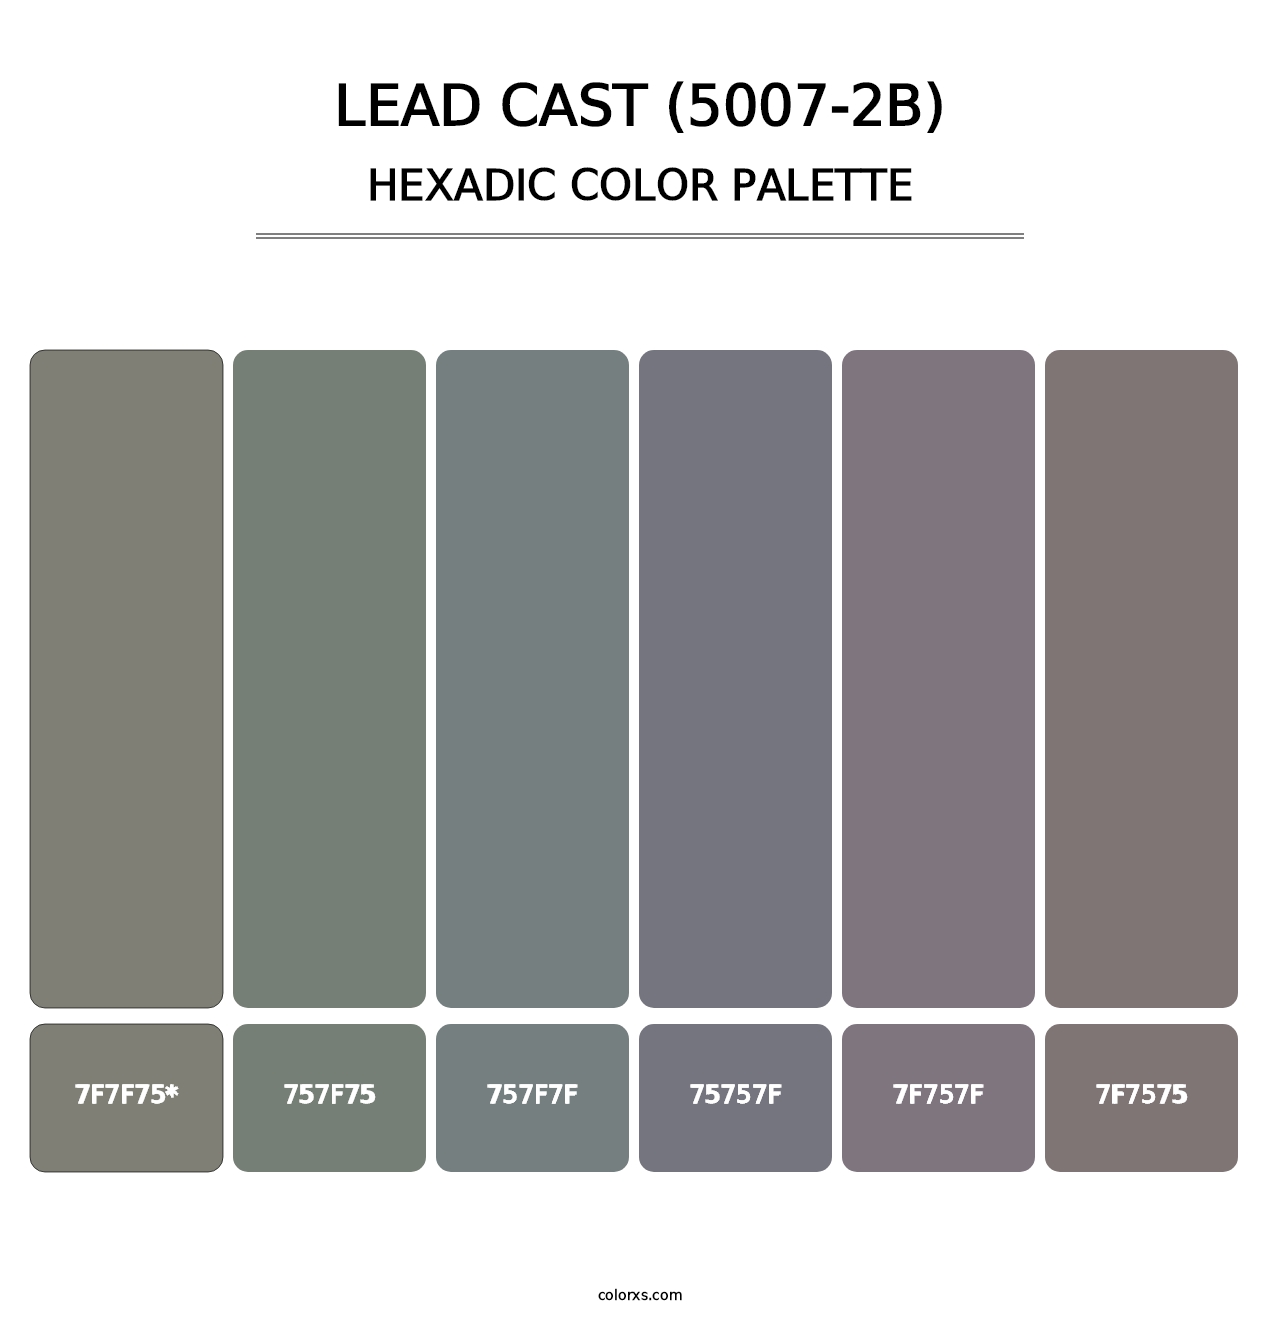 Lead Cast (5007-2B) - Hexadic Color Palette